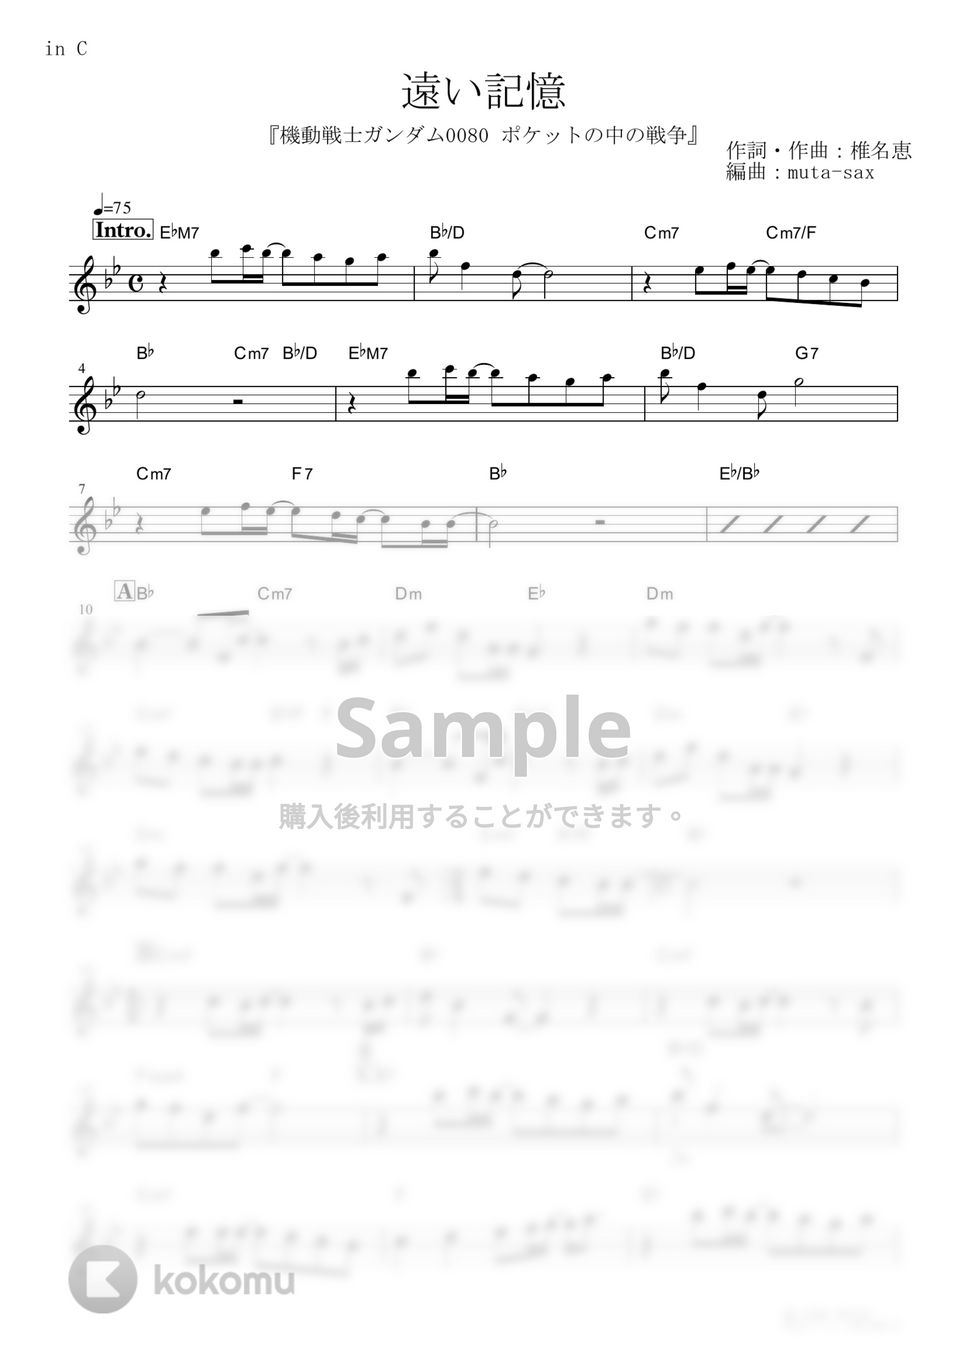 椎名恵 - 遠い記憶 (『機動戦士ガンダム0080 ポケットの中の戦争』 / in C) by muta-sax